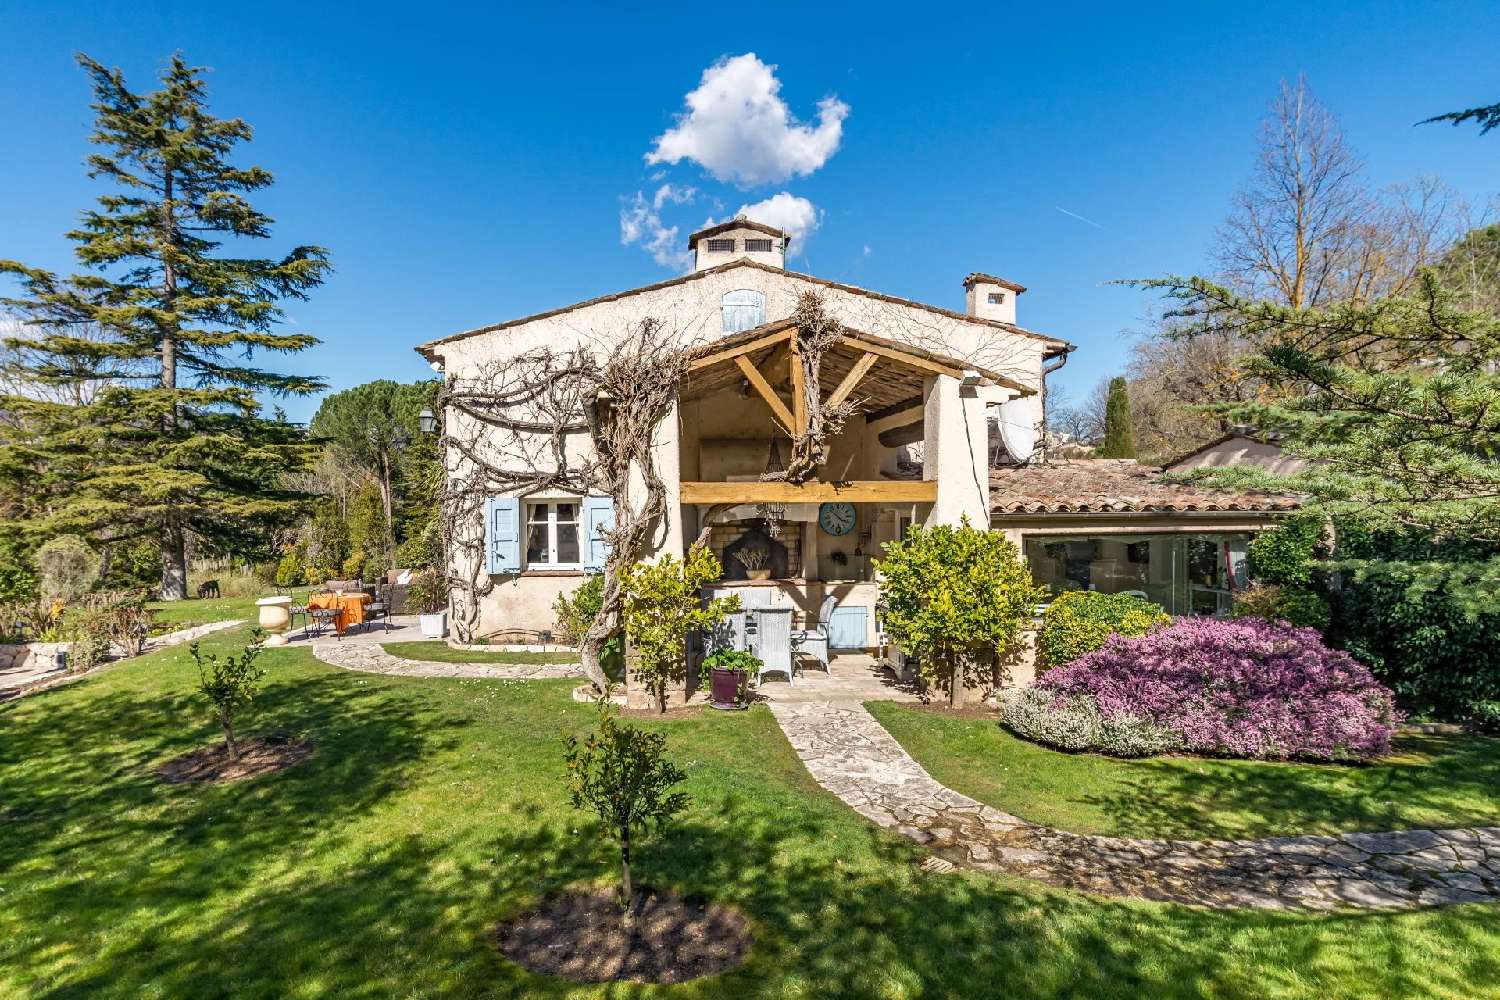  à vendre maison Châteauneuf-Grasse Alpes-Maritimes 2